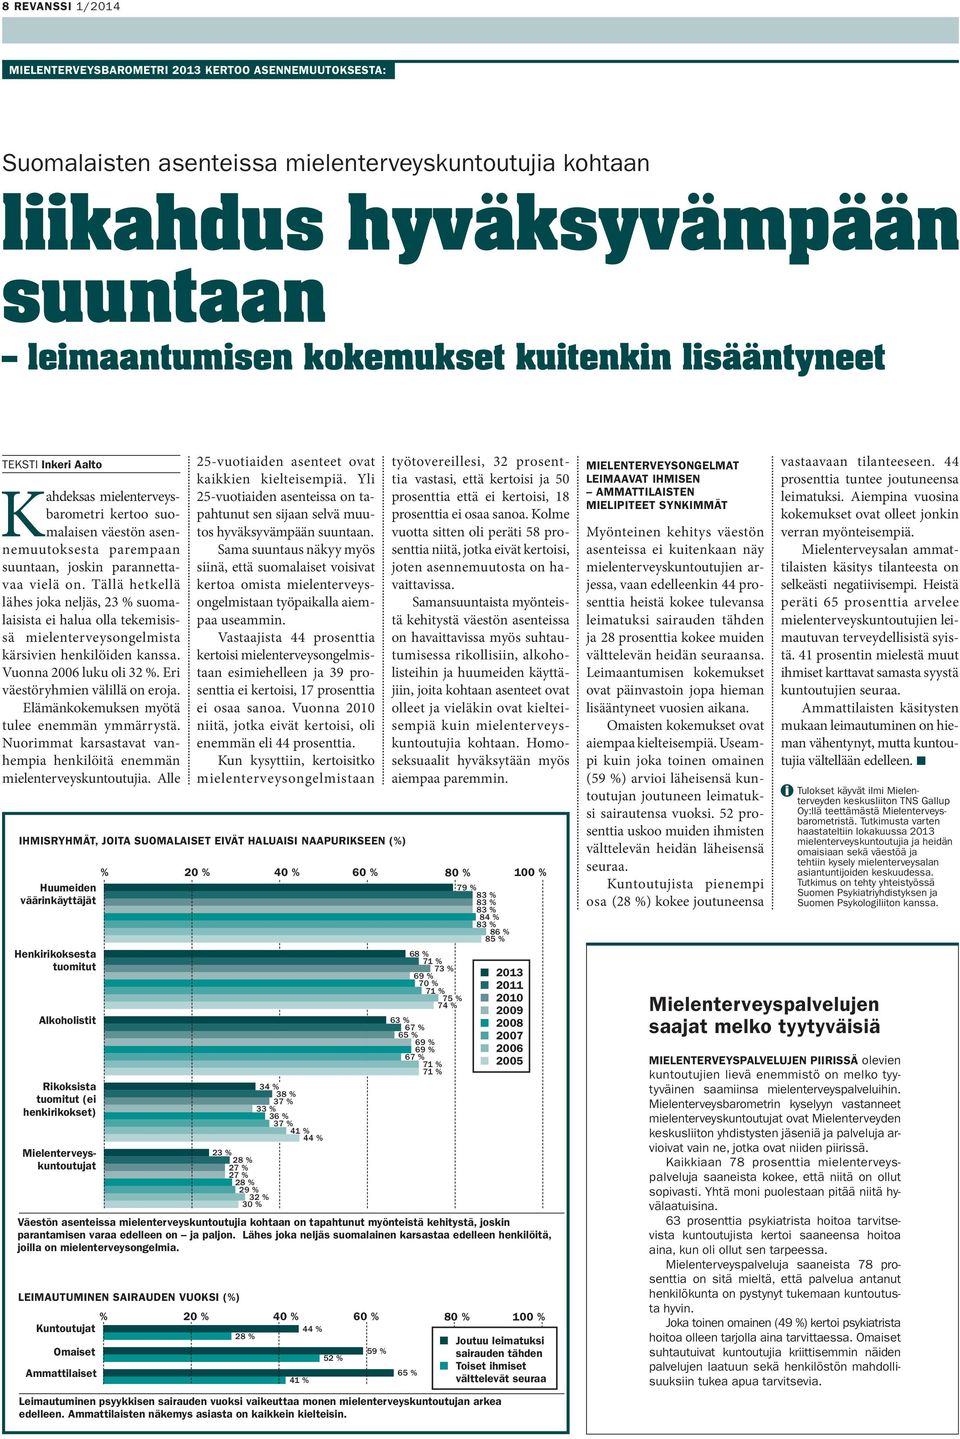 Tällä hetkellä lähes joka neljäs, 23 % suomalaisista ei halua olla tekemisissä mielenterveysongelmista kärsivien henkilöiden kanssa. Vuonna 2006 luku oli 32 %. Eri väestöryhmien välillä on eroja.